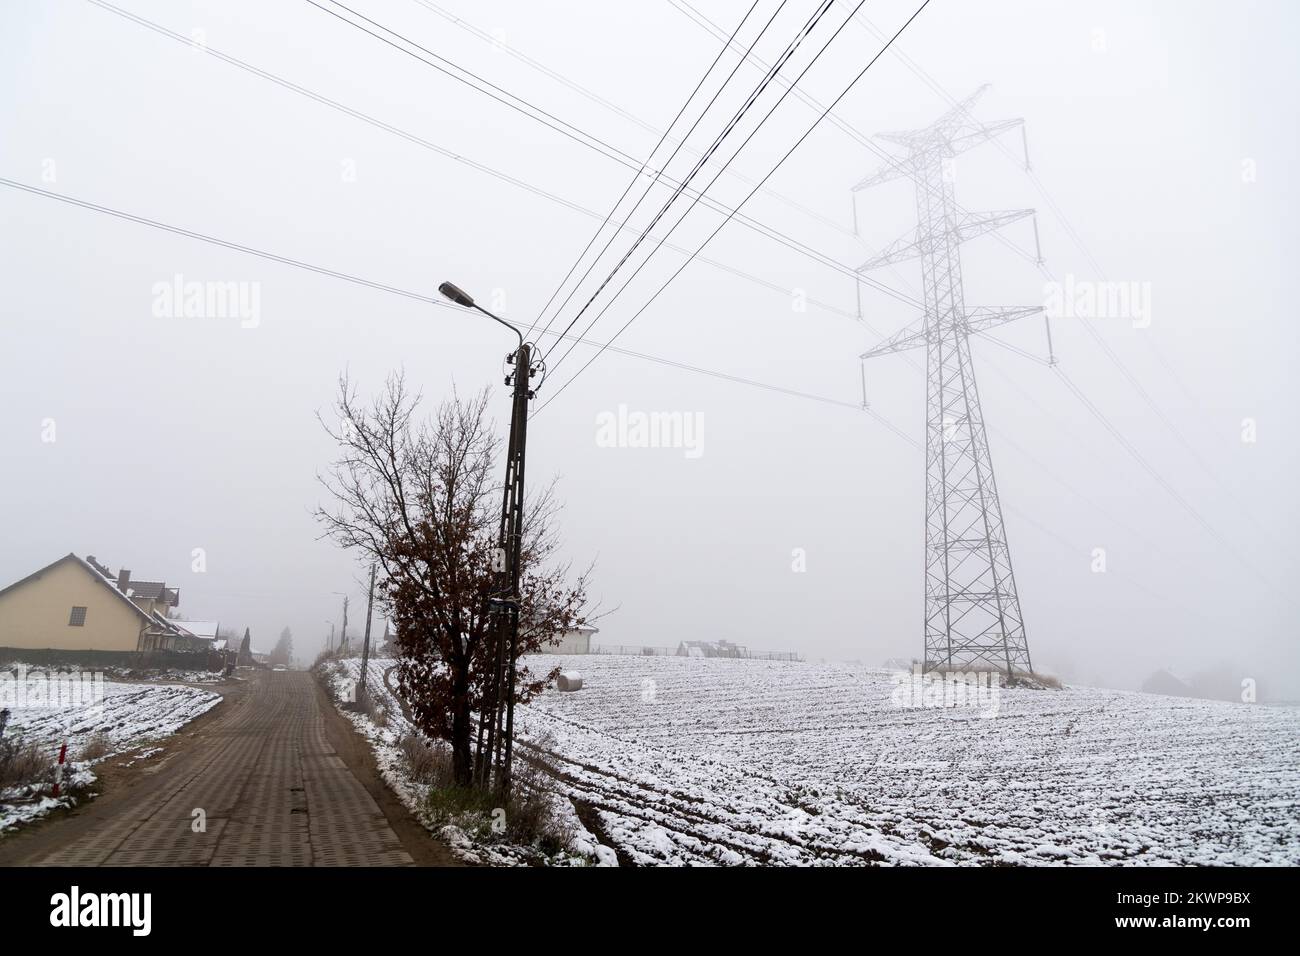 High voltage power lines in Pepowo, Poland © Wojciech Strozyk / Alamy Stock Photo Stock Photo